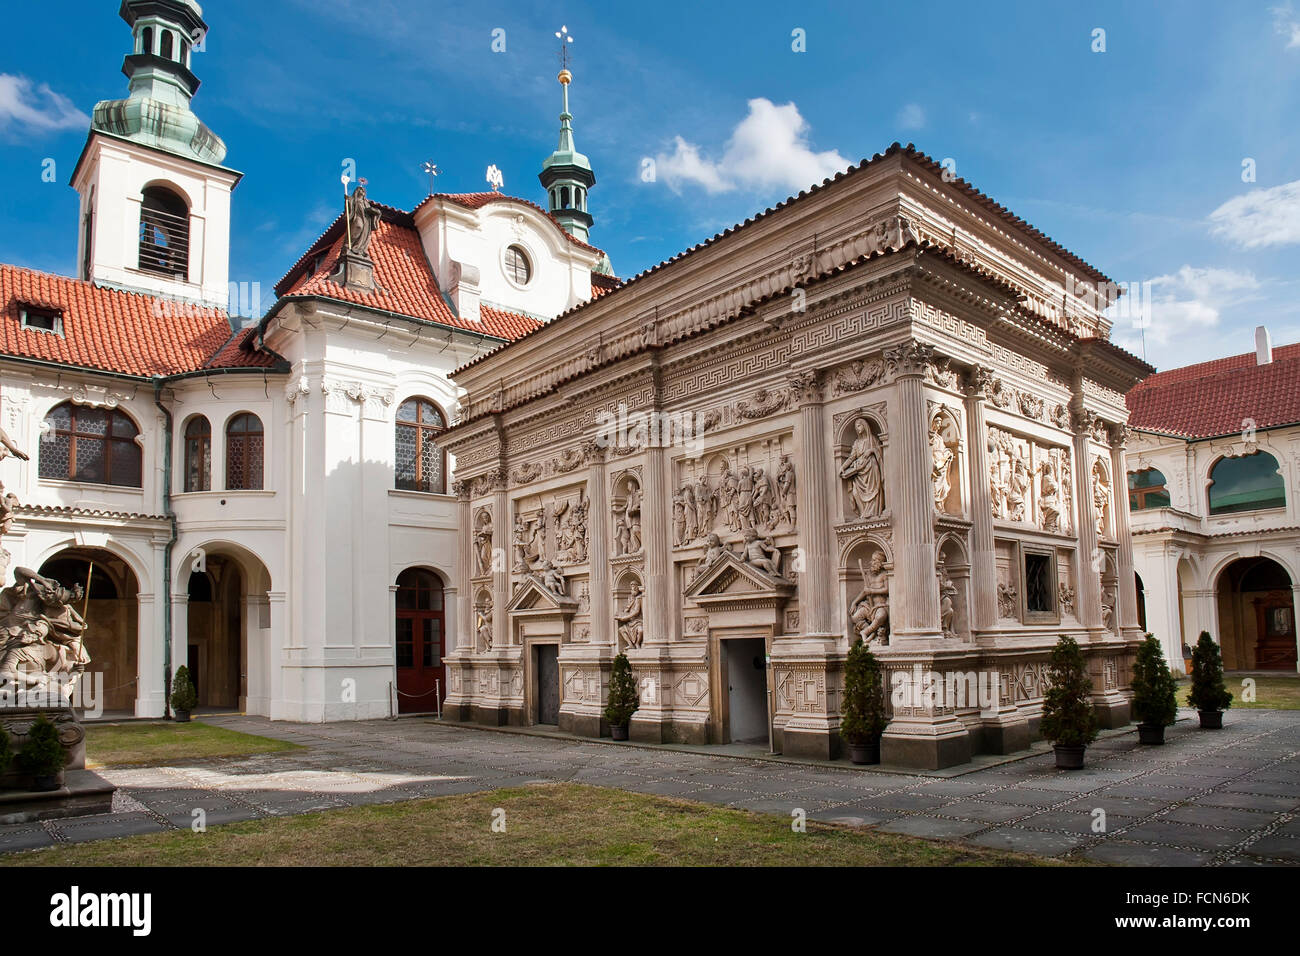 Prag. Blick auf die Santa Casa in der Mitte des Umganges der Prager Loreto. Stockfoto